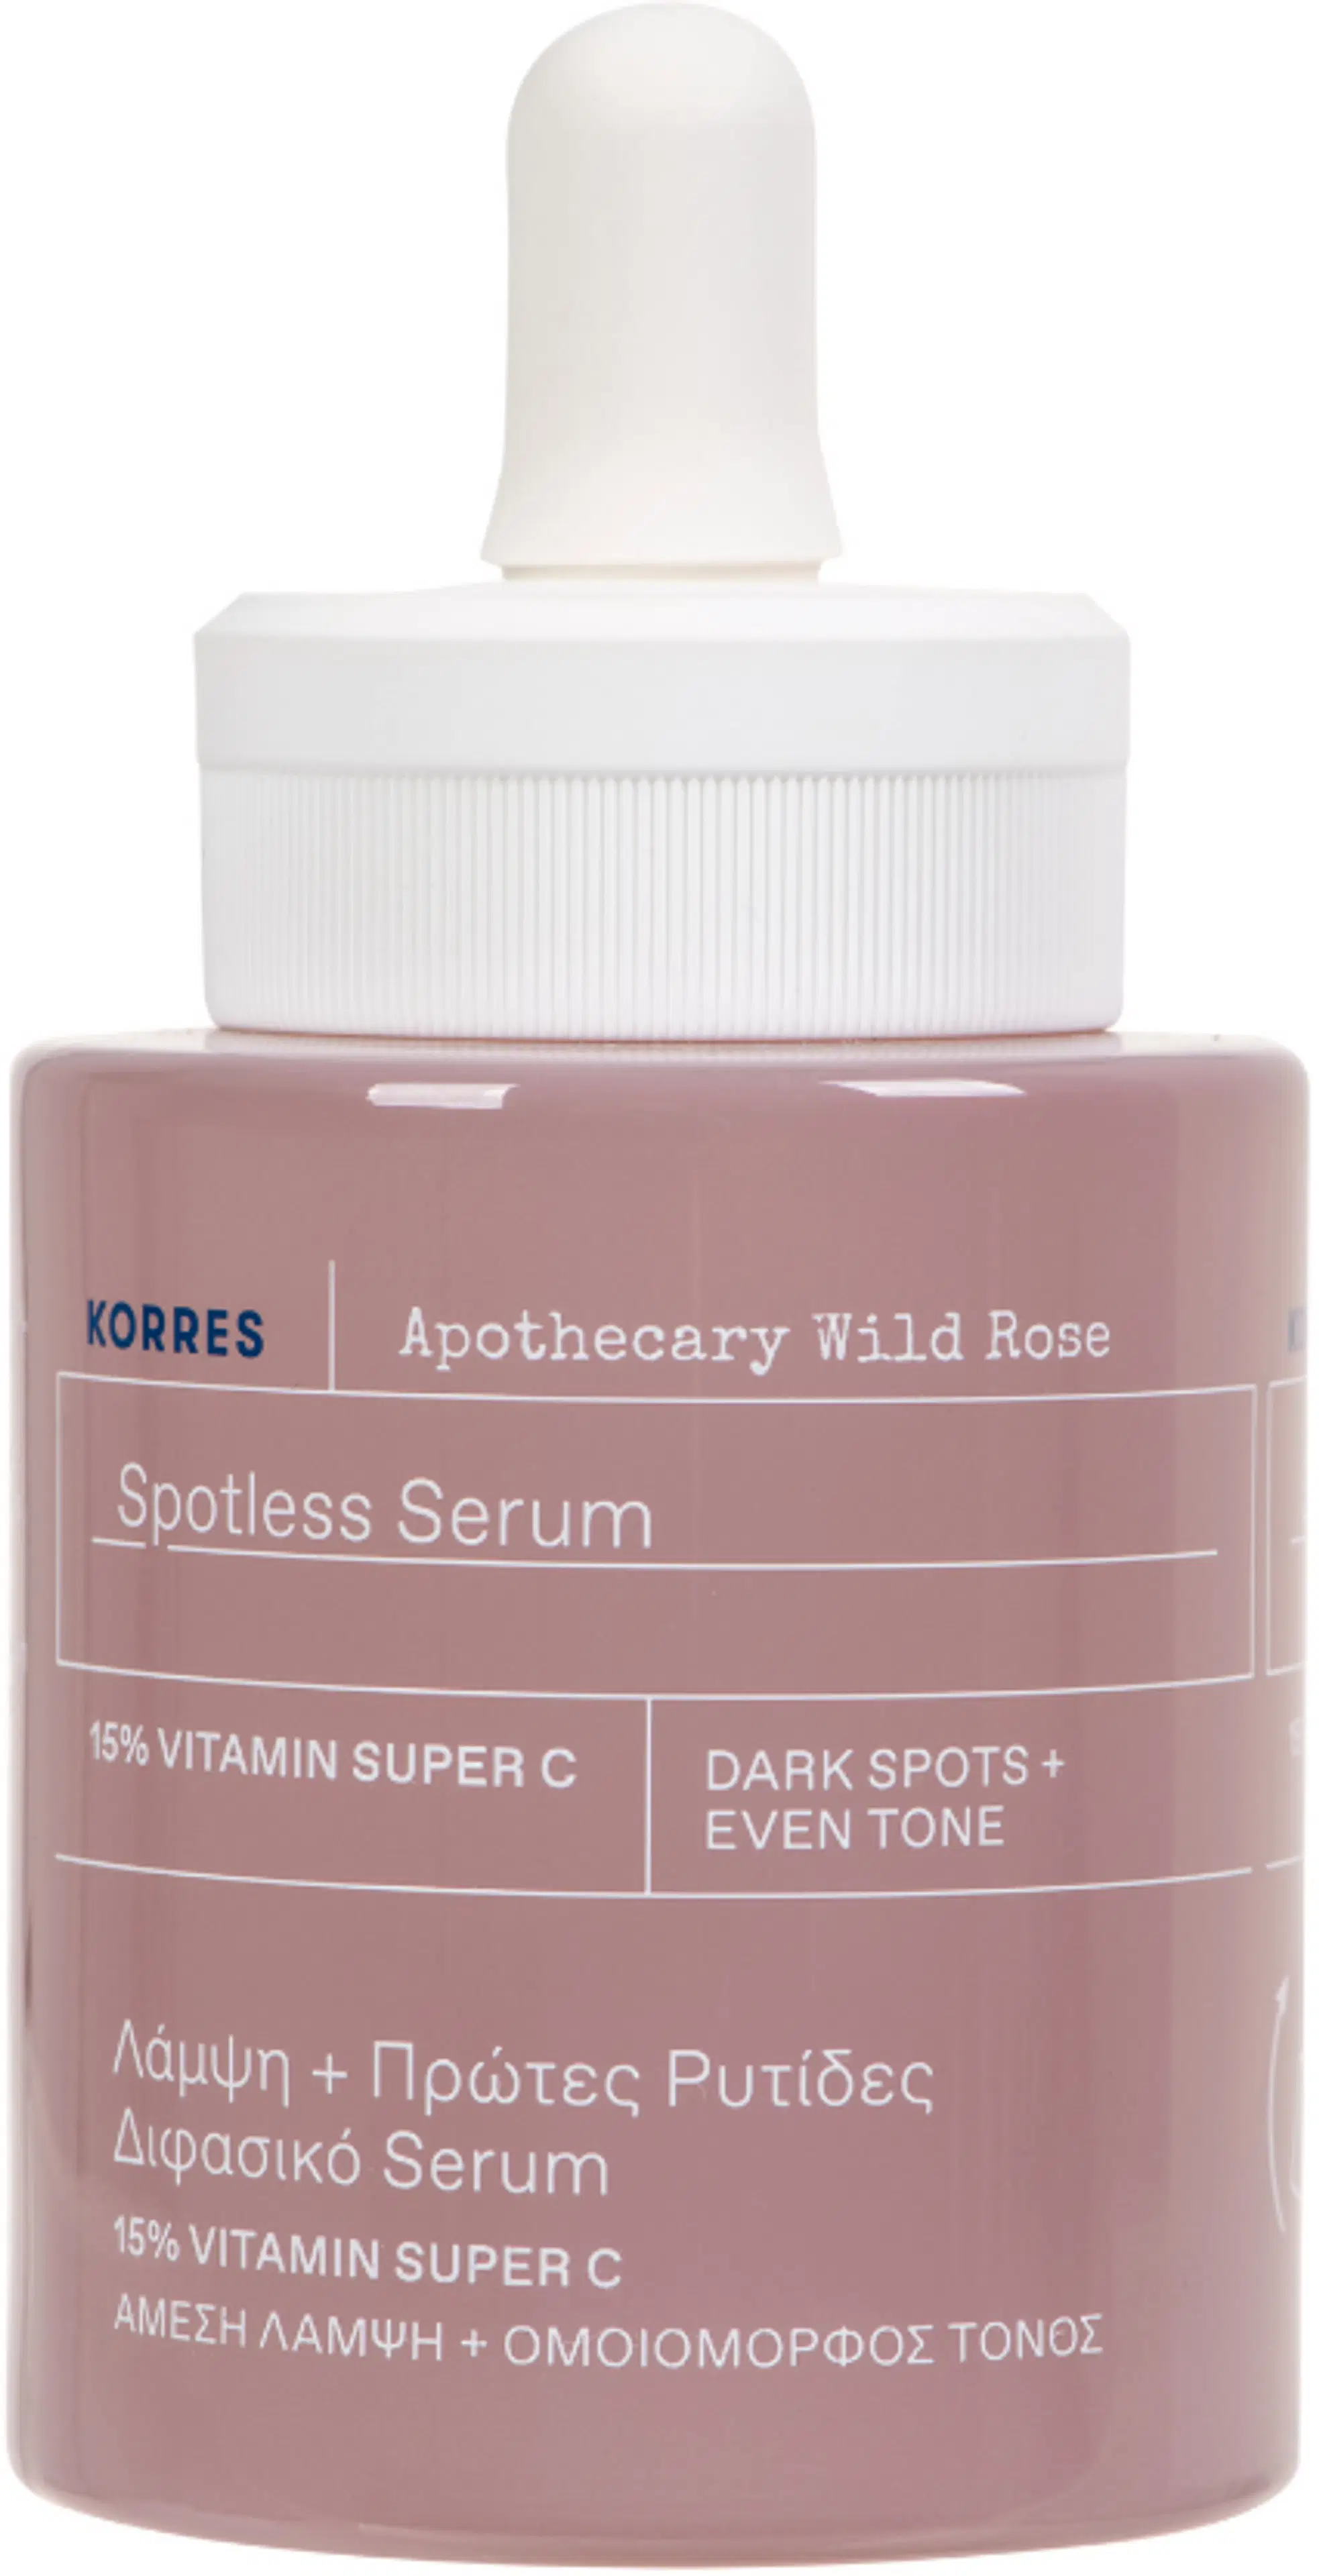 KORRES Apothecary Wild Rose Spotless Seerumi 30 ml